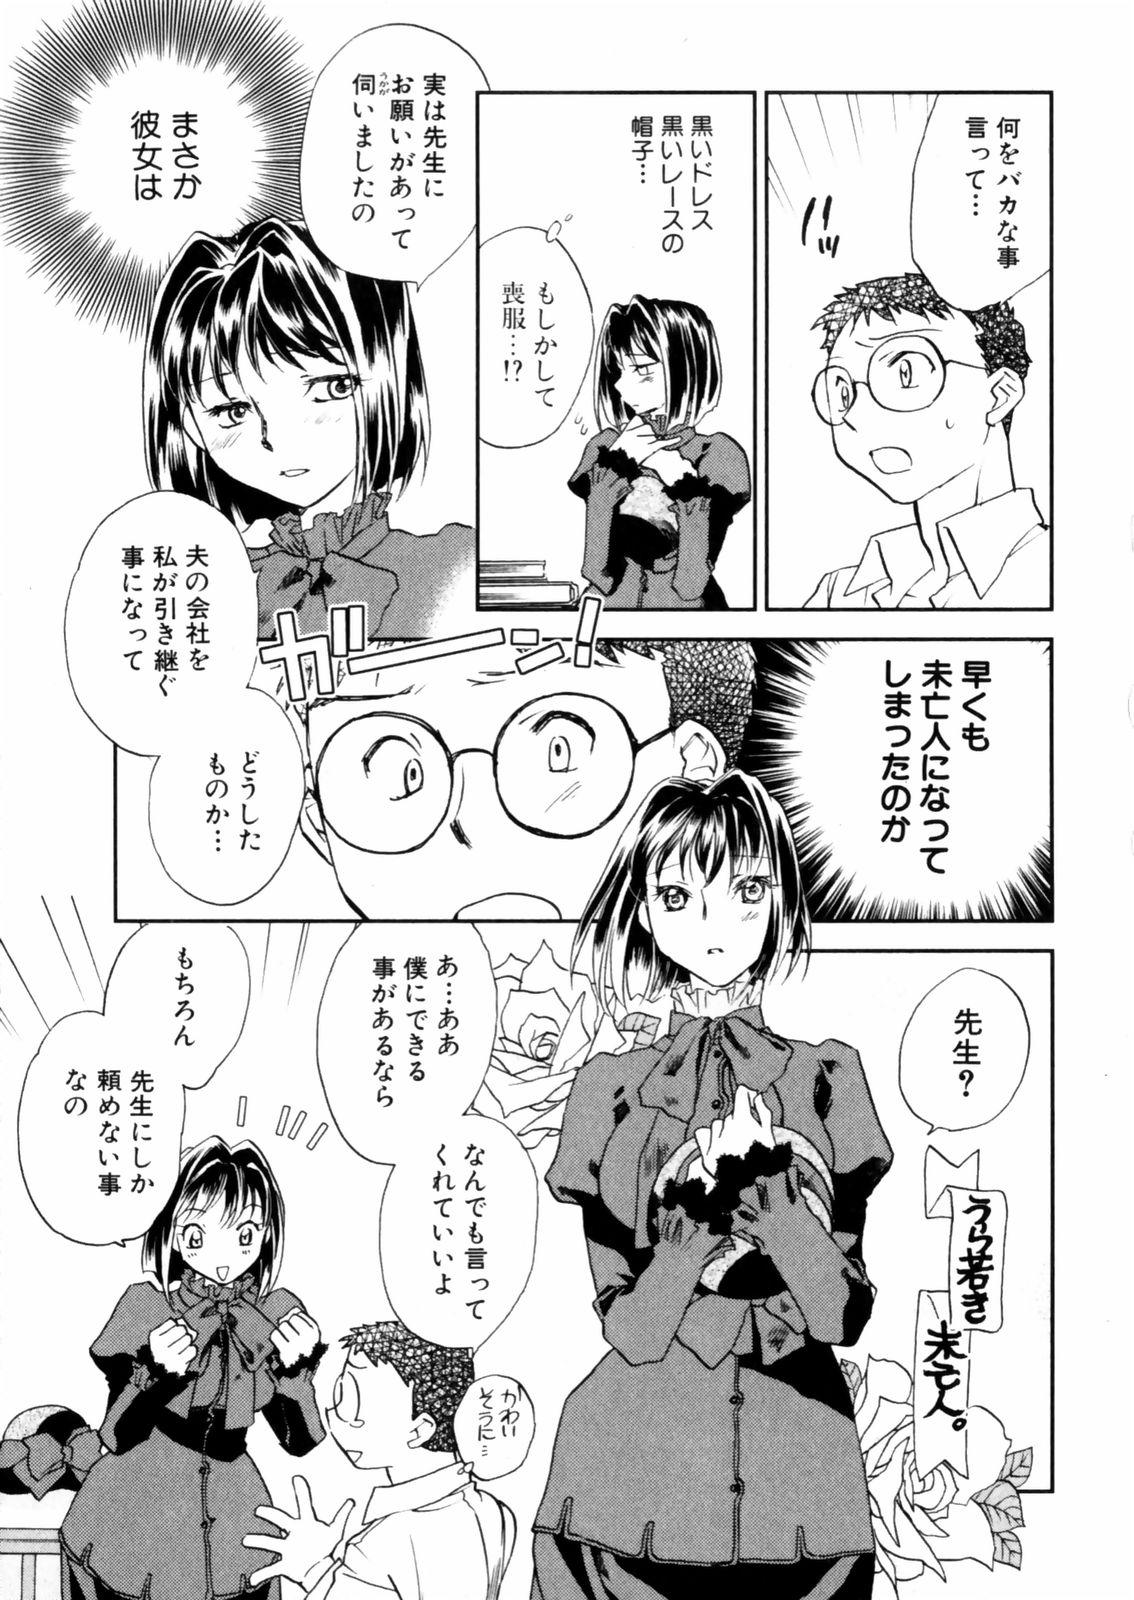 [Okano Ahiru] Hanasake ! Otome Juku (Otome Private Tutoring School) Vol.2 46